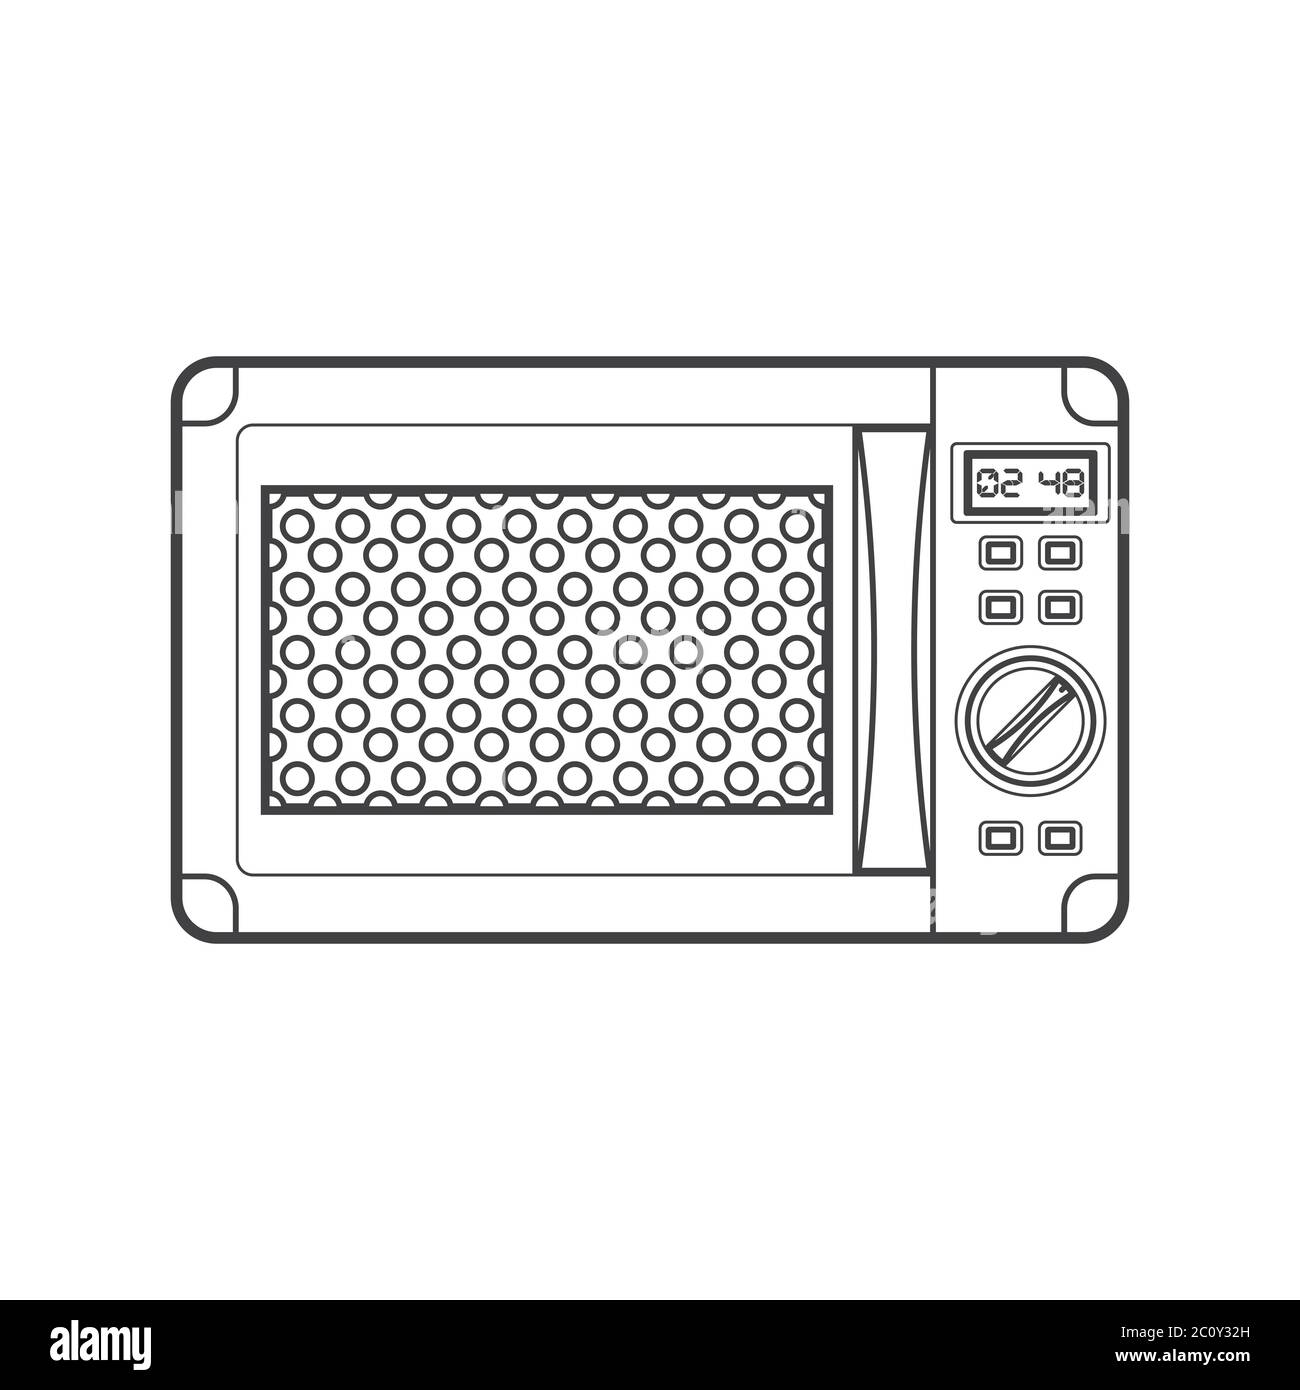 https://c8.alamy.com/comp/2C0Y32H/outline-black-microwave-oven-illustration-2C0Y32H.jpg